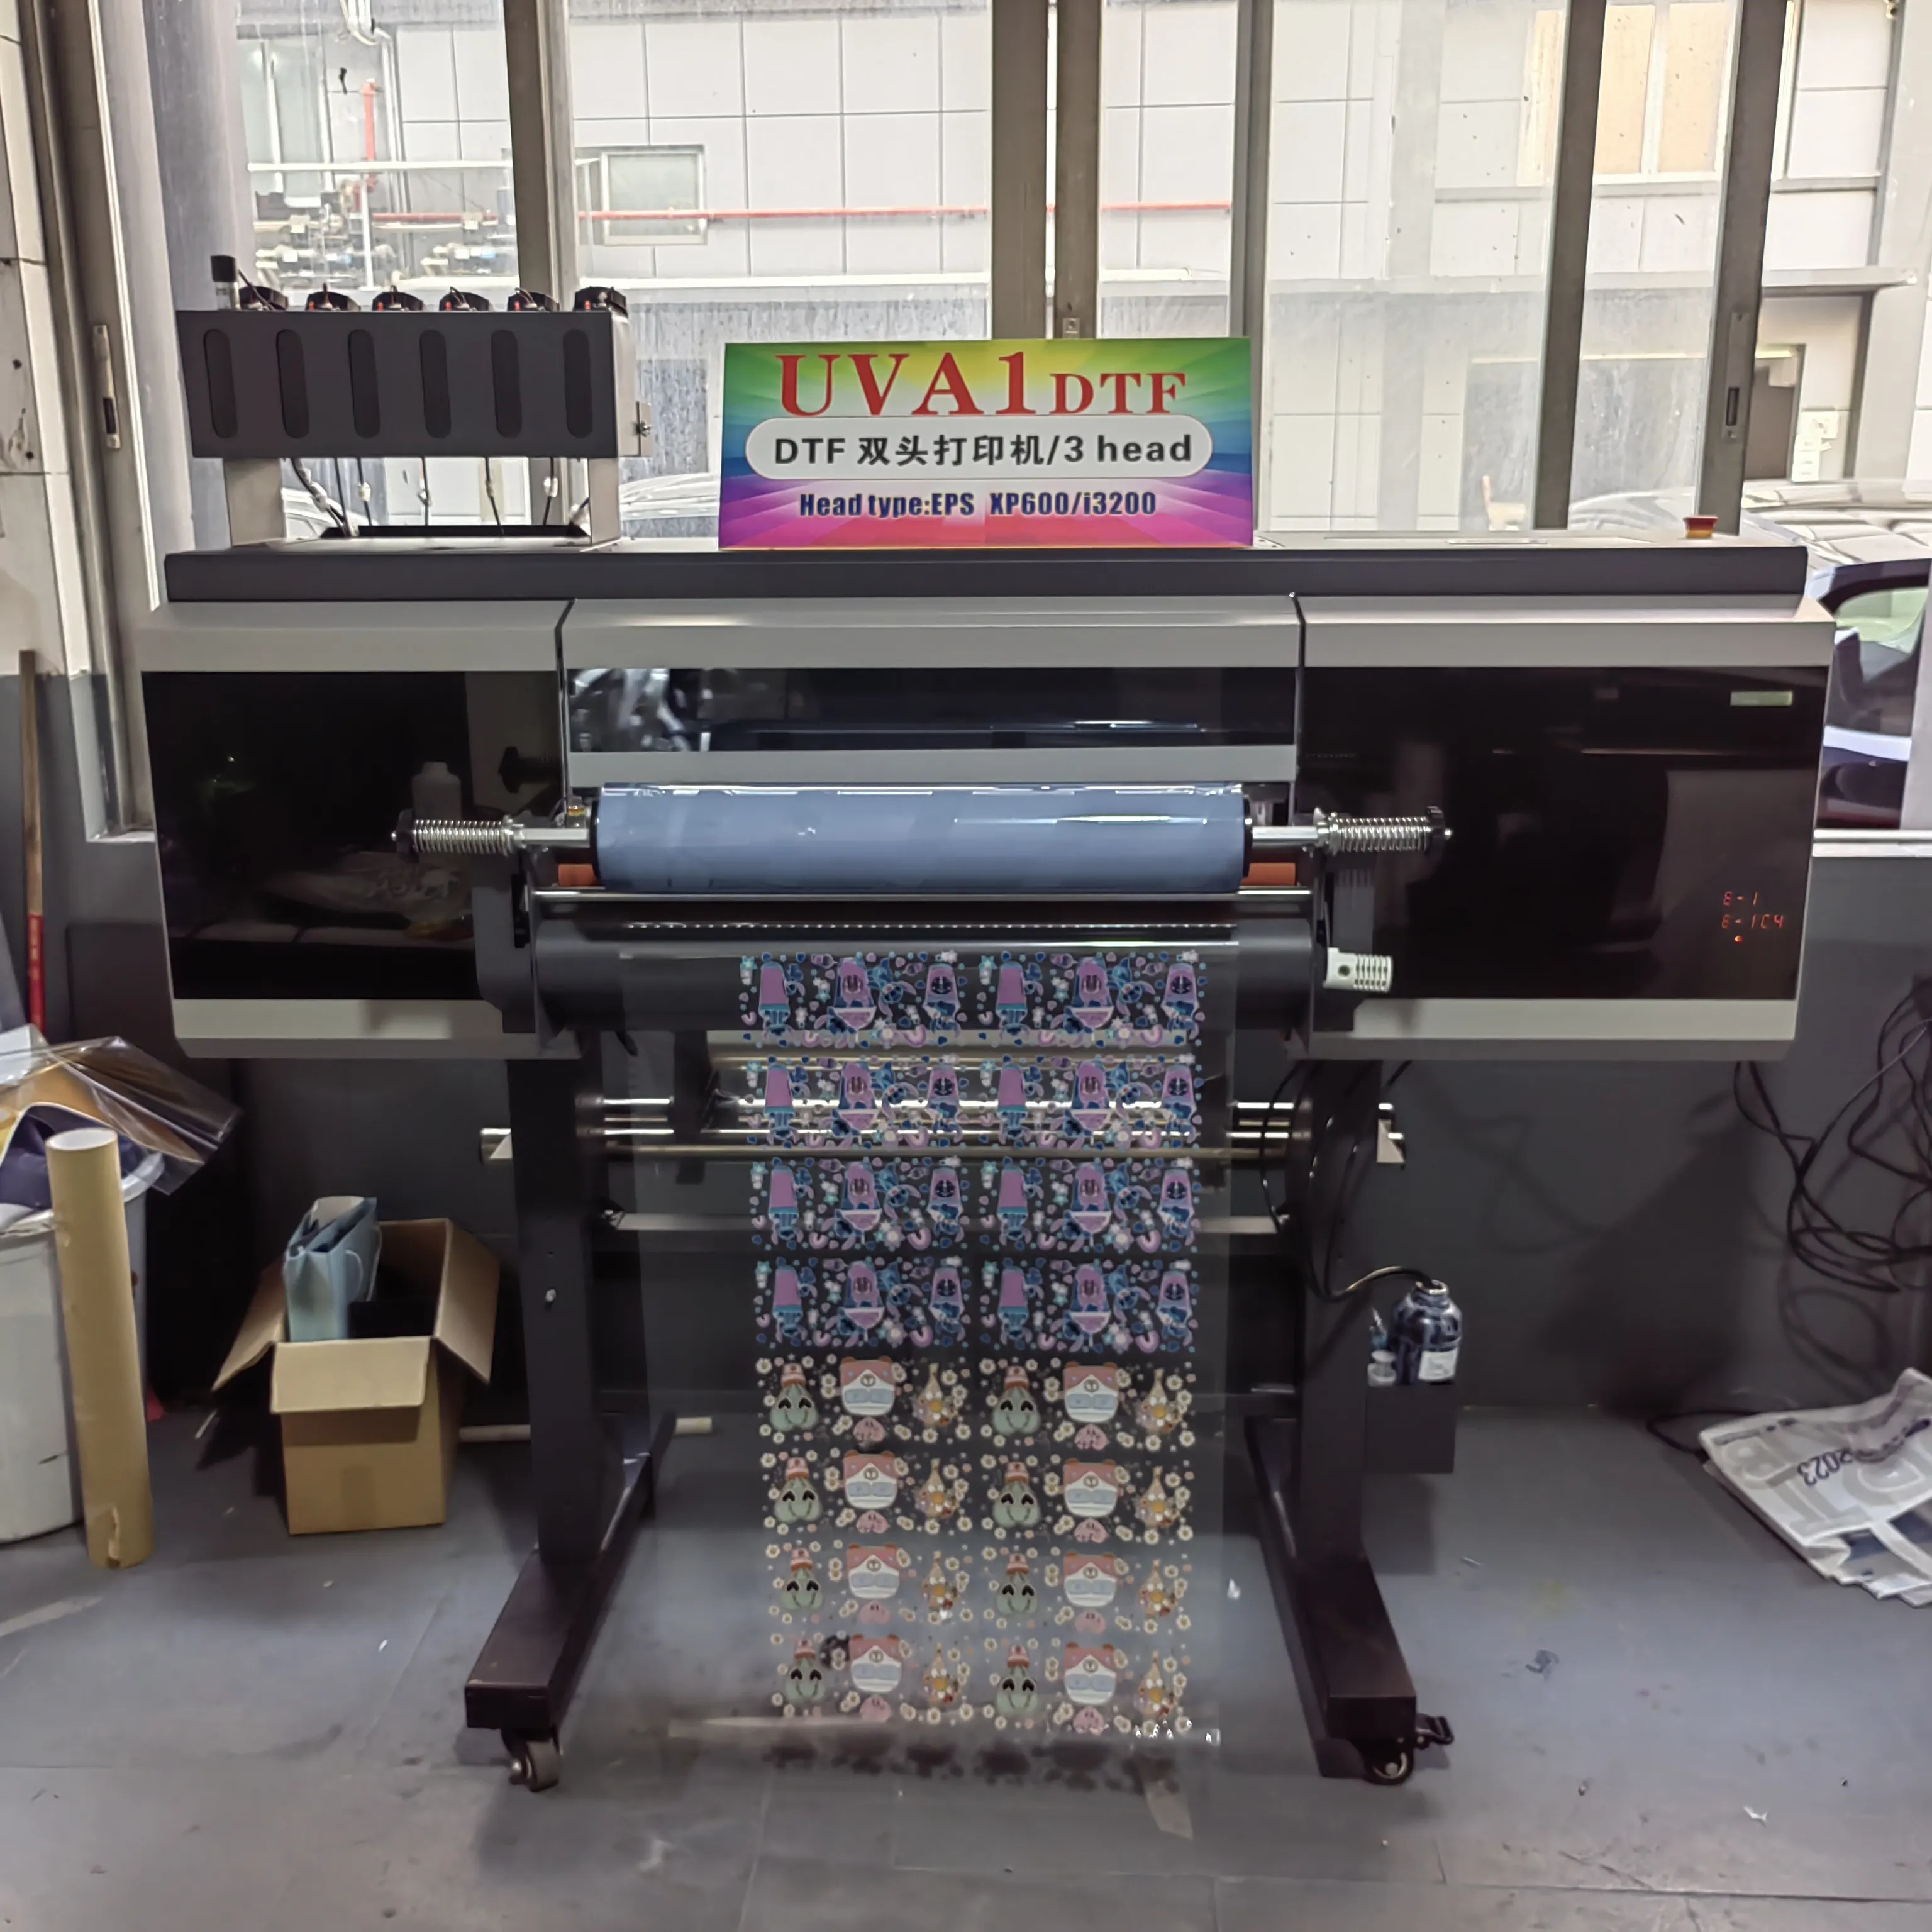 नई-रंग 60cm यूवी dtf प्रिंटर dtf यूवी flatbed inkjet flatbed प्रिंटर रोल करने के लिए रोल यूवी dtf 60cm अटल बिहारी फिल्म स्टीकर प्रिंटर मशीन